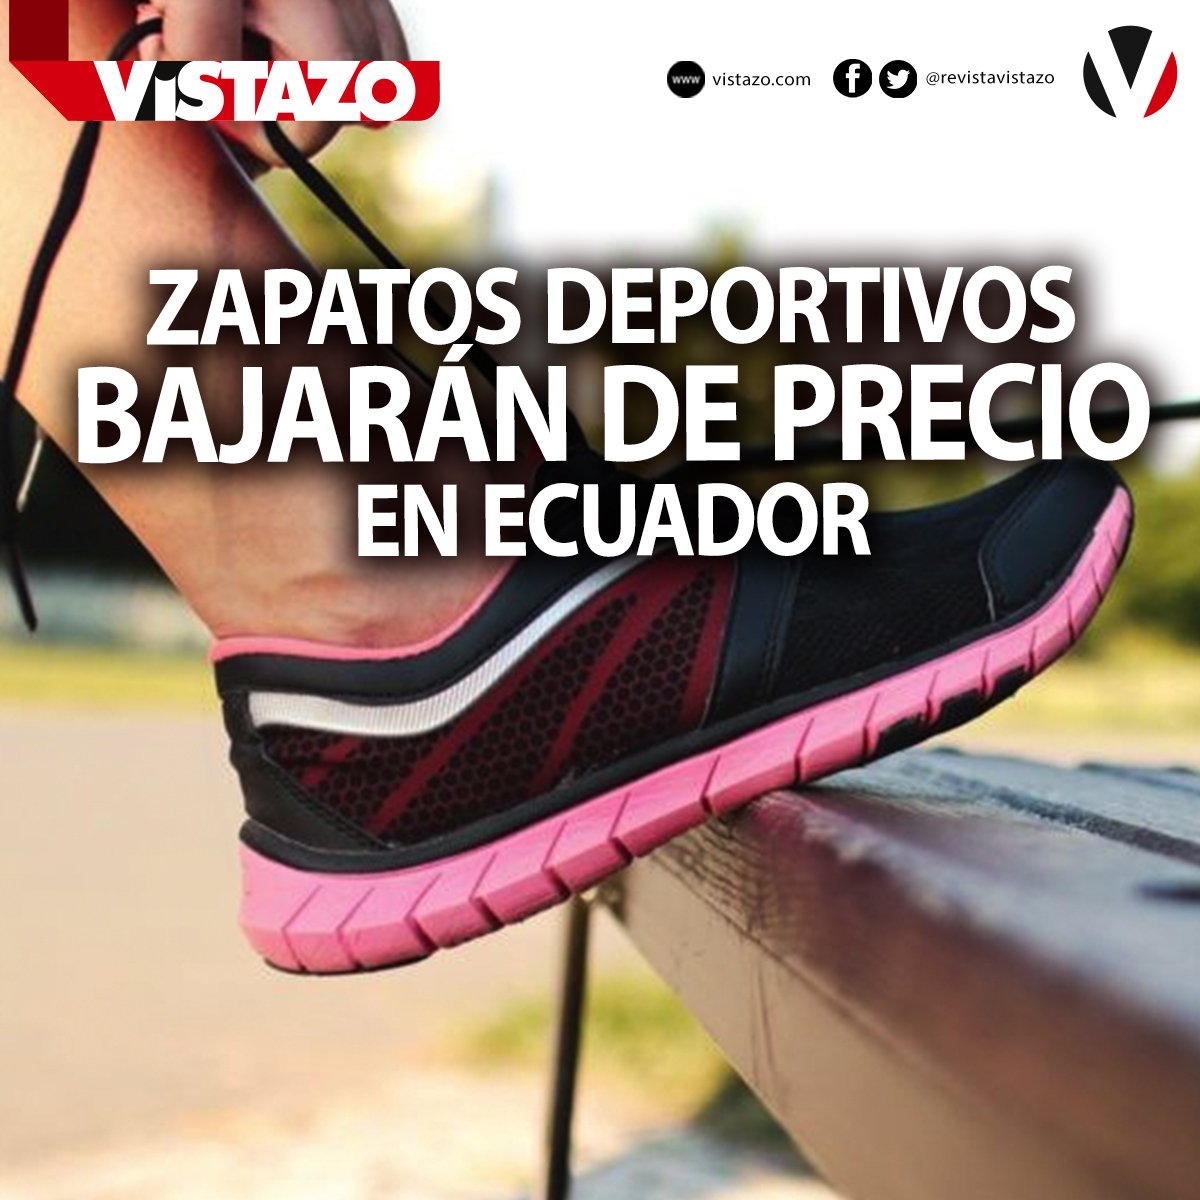 Revista Vistazo on Twitter: "#ATENCIÓN | Los importadores pagarán hasta 40%  menos por los zapatos deportivos y 0% por los implementos deportivos.  ¡Conozca el beneficio para promover el deporte en Ecuador!  https://t.co/0u4cvtZV81